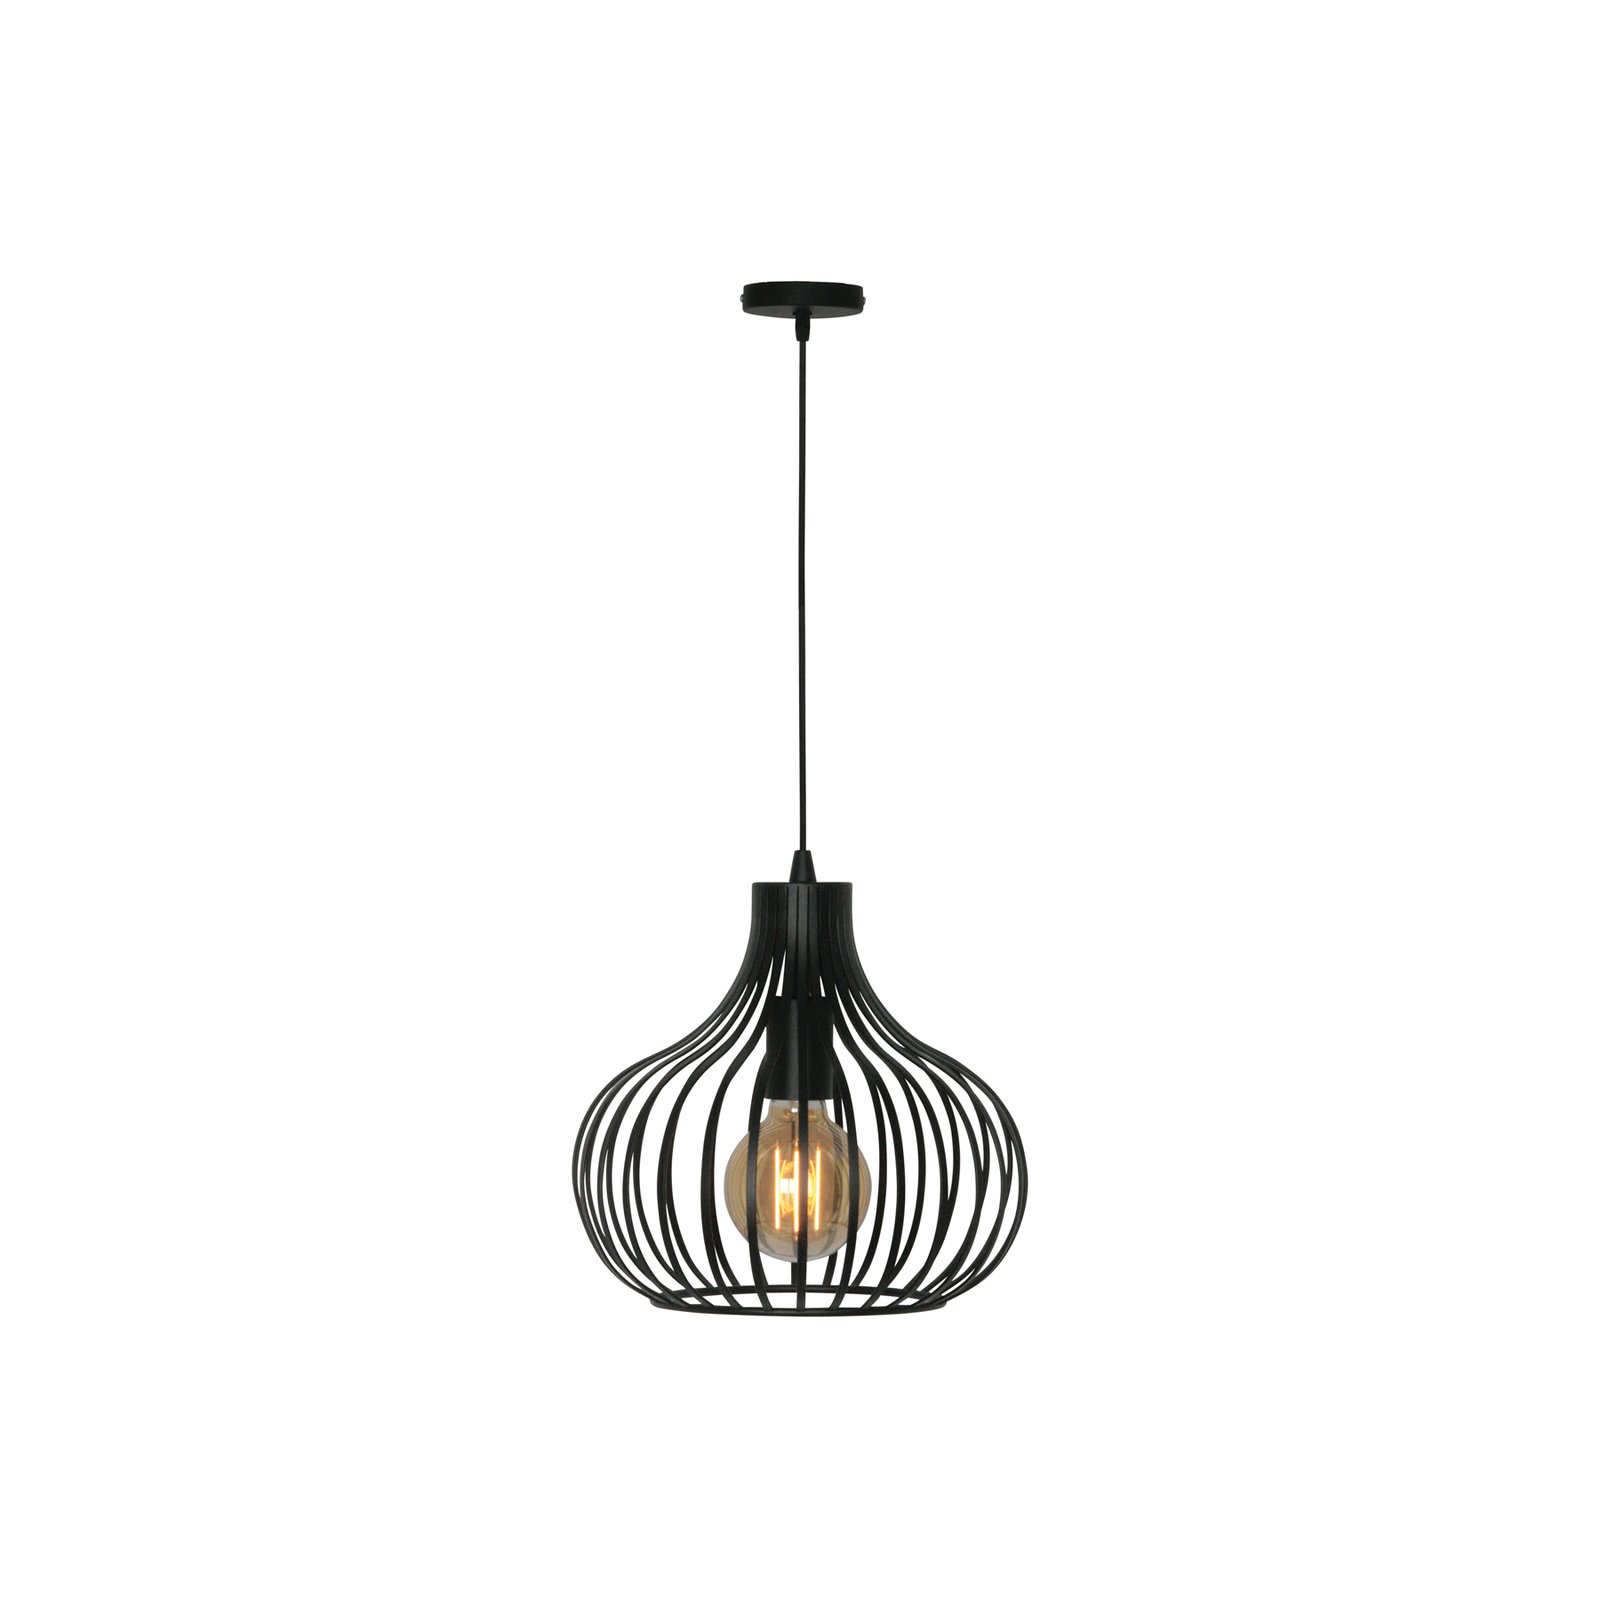 Aglio hanglamp, Ø 28 cm, zwart, metaal